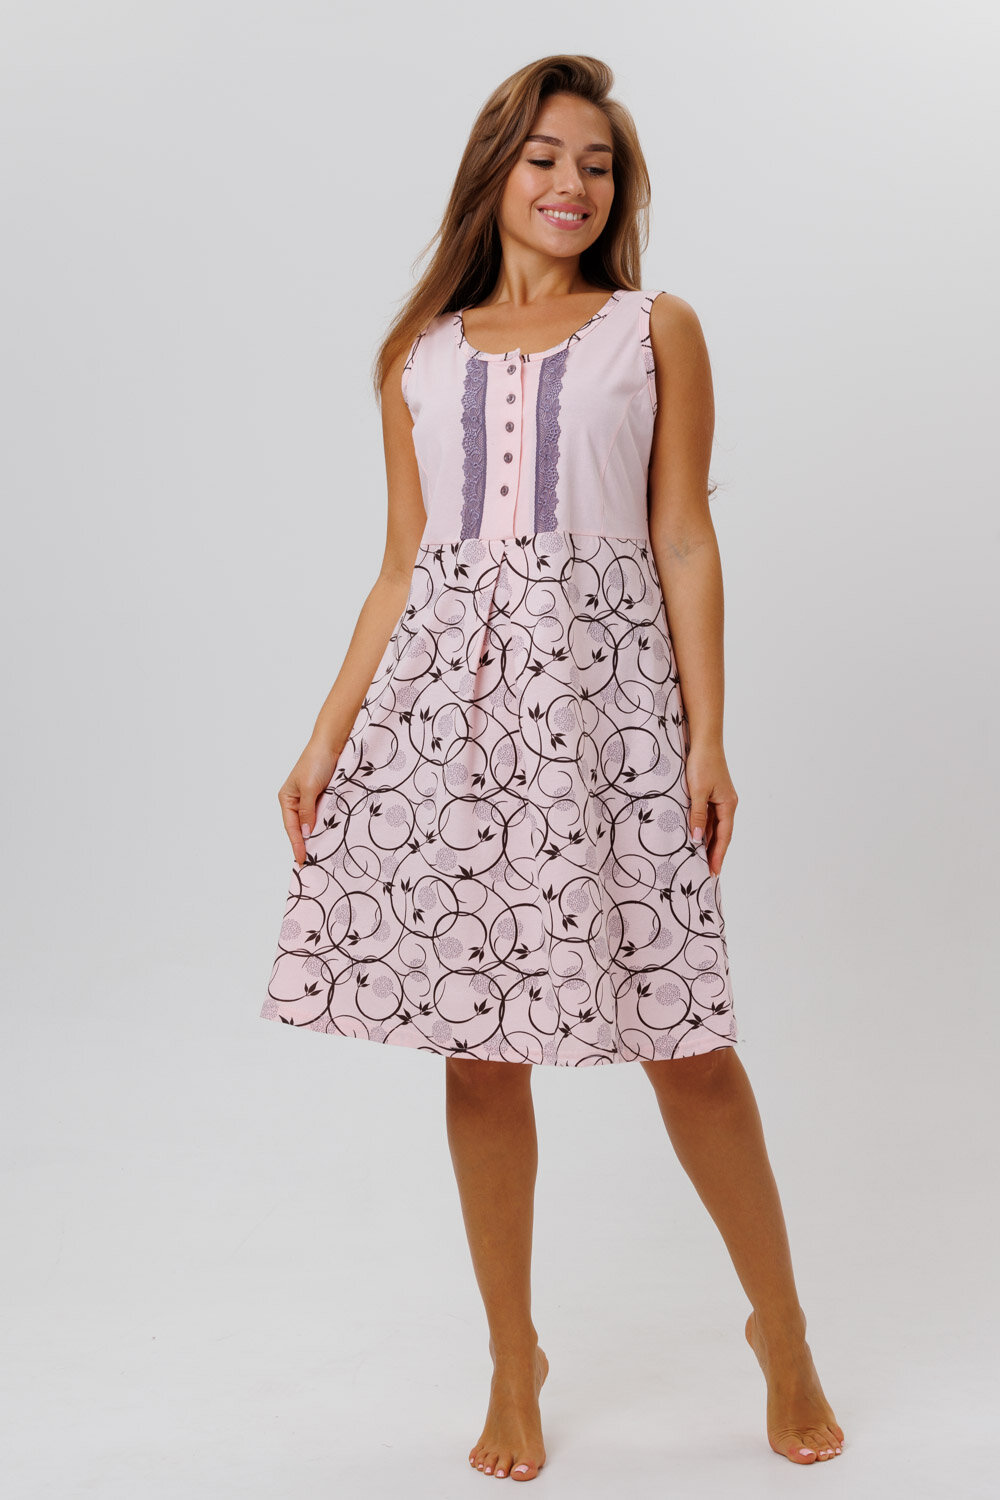 Сорочка Modellini средней длины, без рукава, размер 52, розовый - фотография № 1